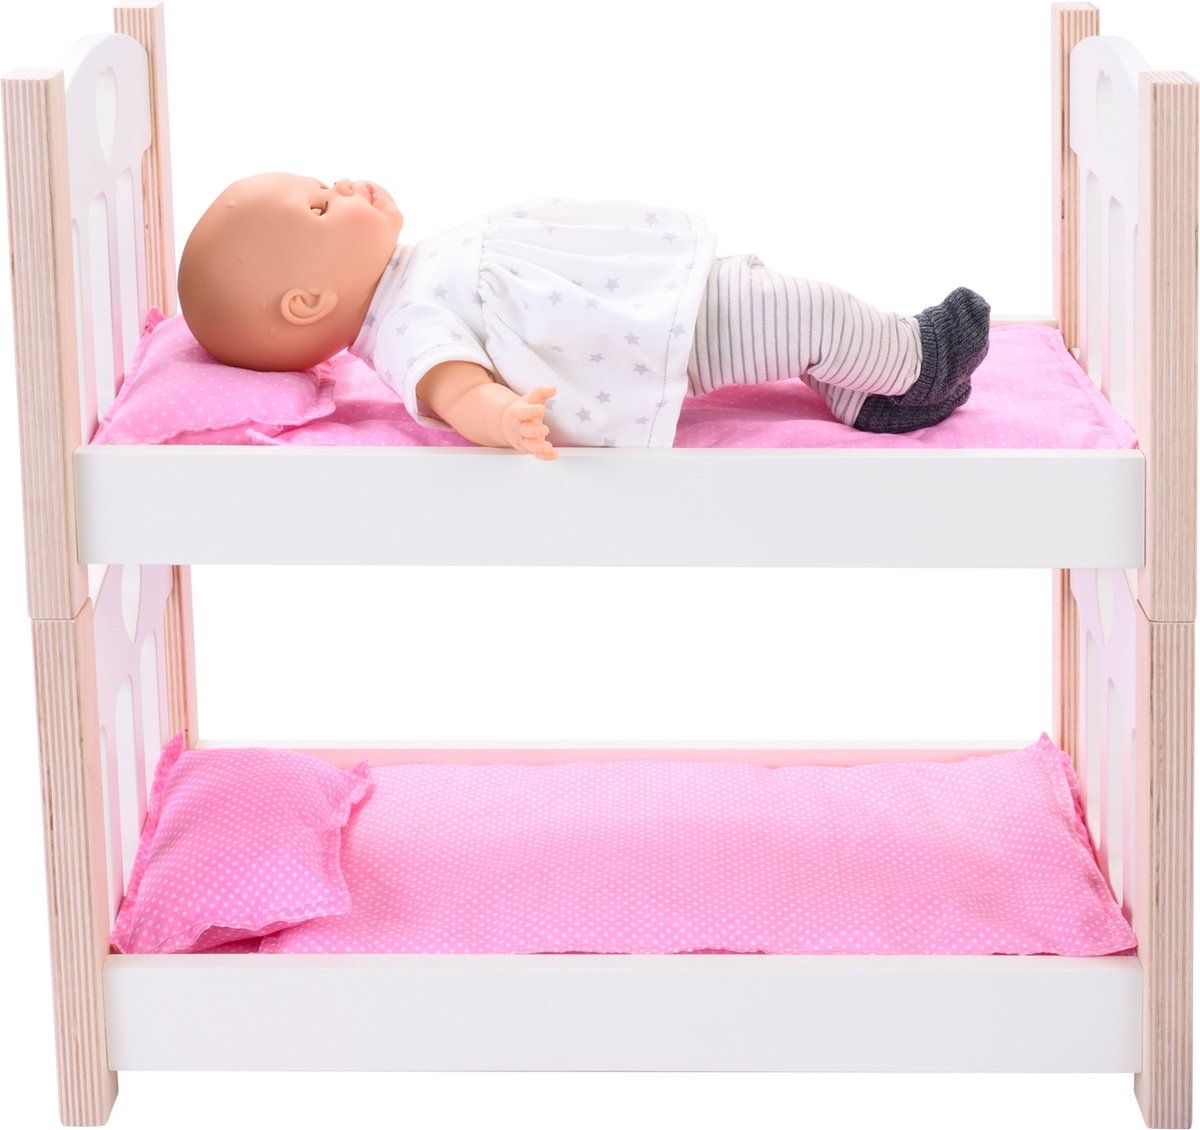 poppen stapelbed - lit superposé pour poupées